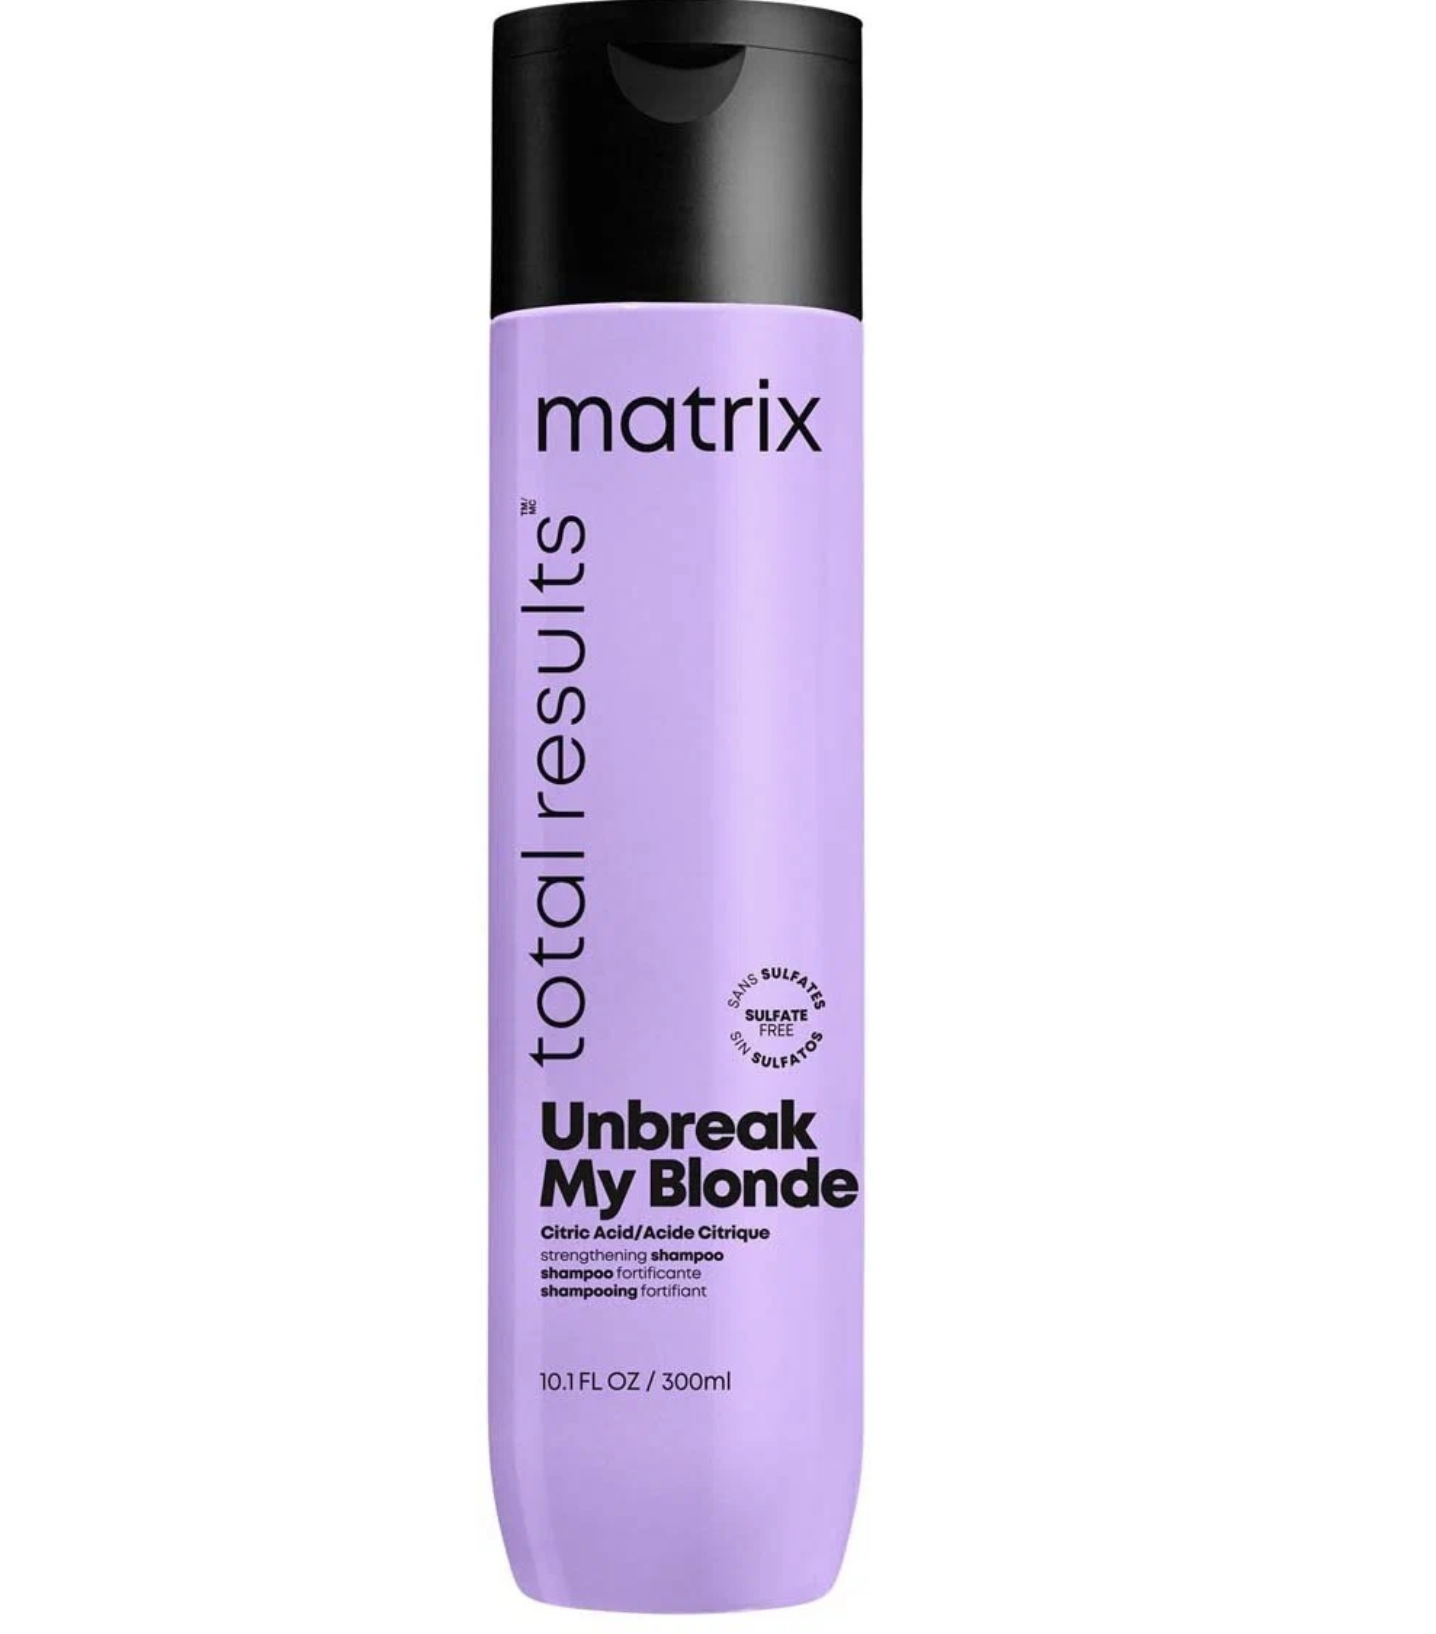   / Matrix Unbreak My Blonde -     300 